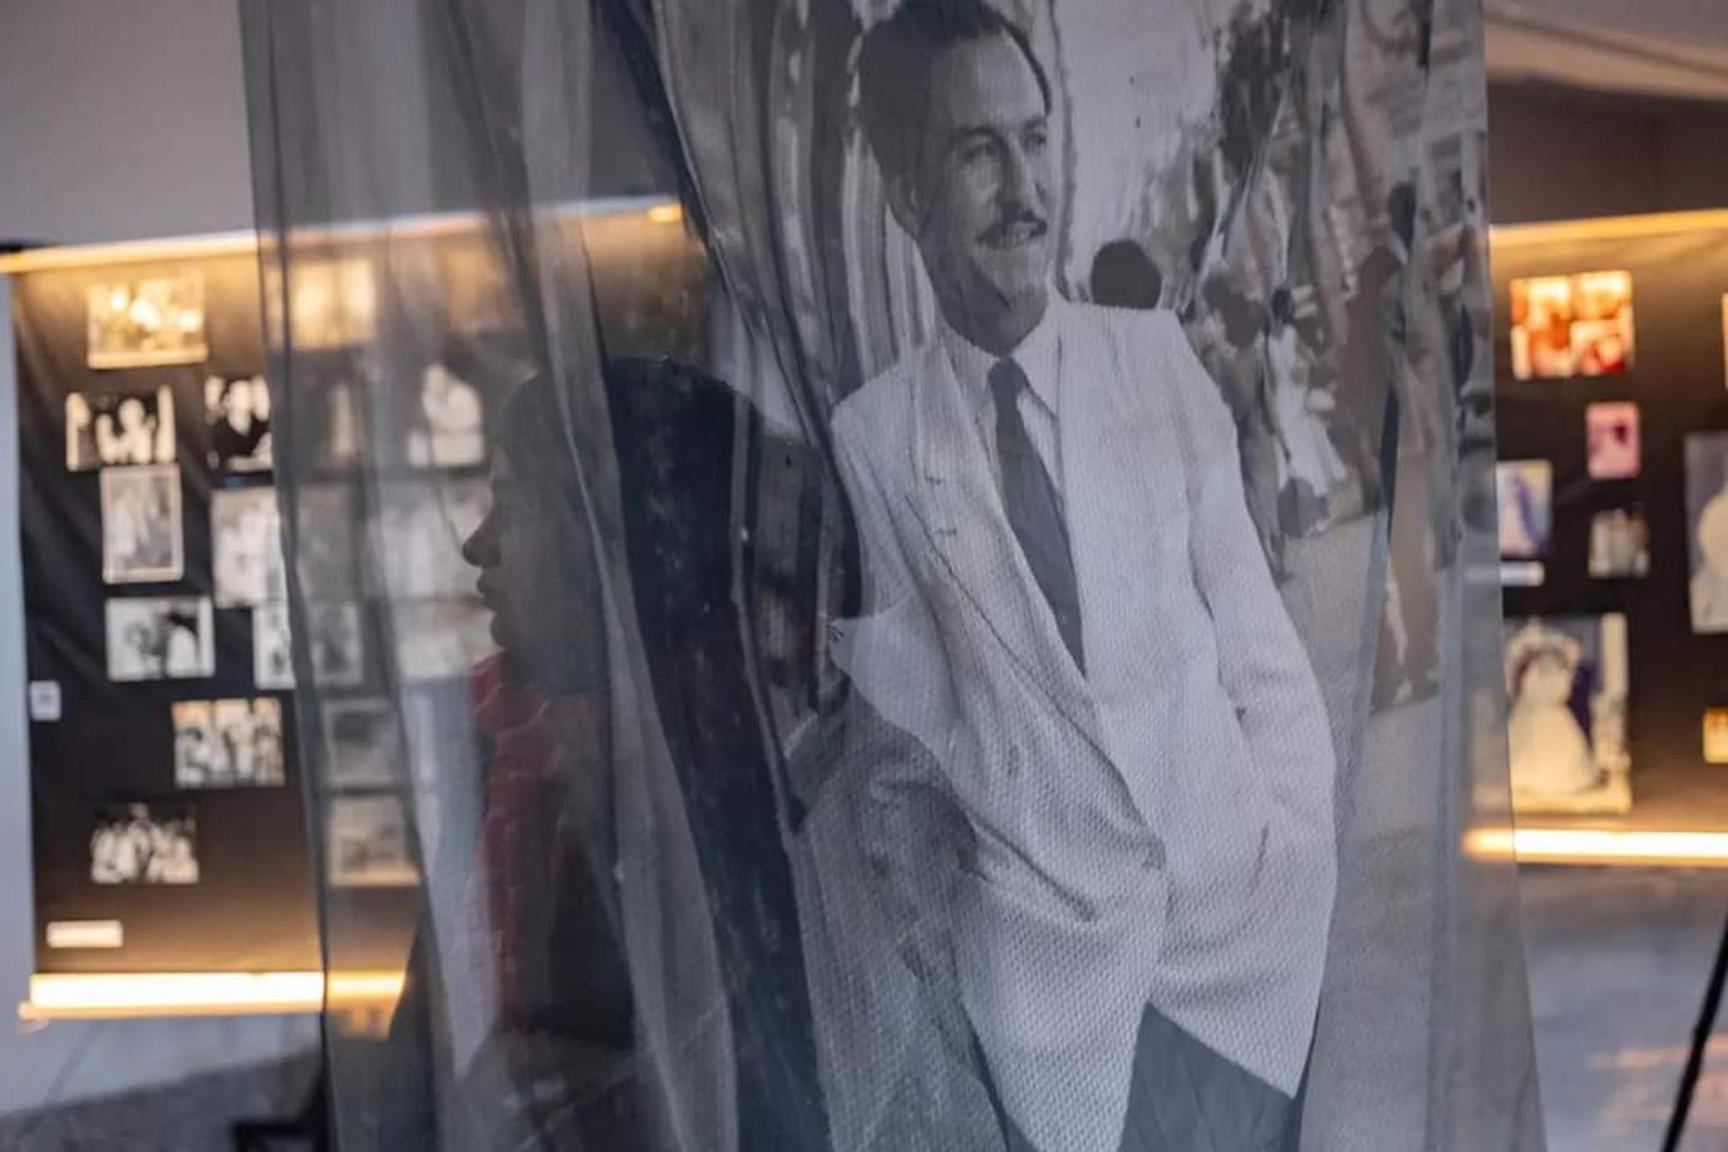 أرشيف بدوي.. معرض صور فوتوغرافية يروي قصة الإسكندرية في 80 عاما